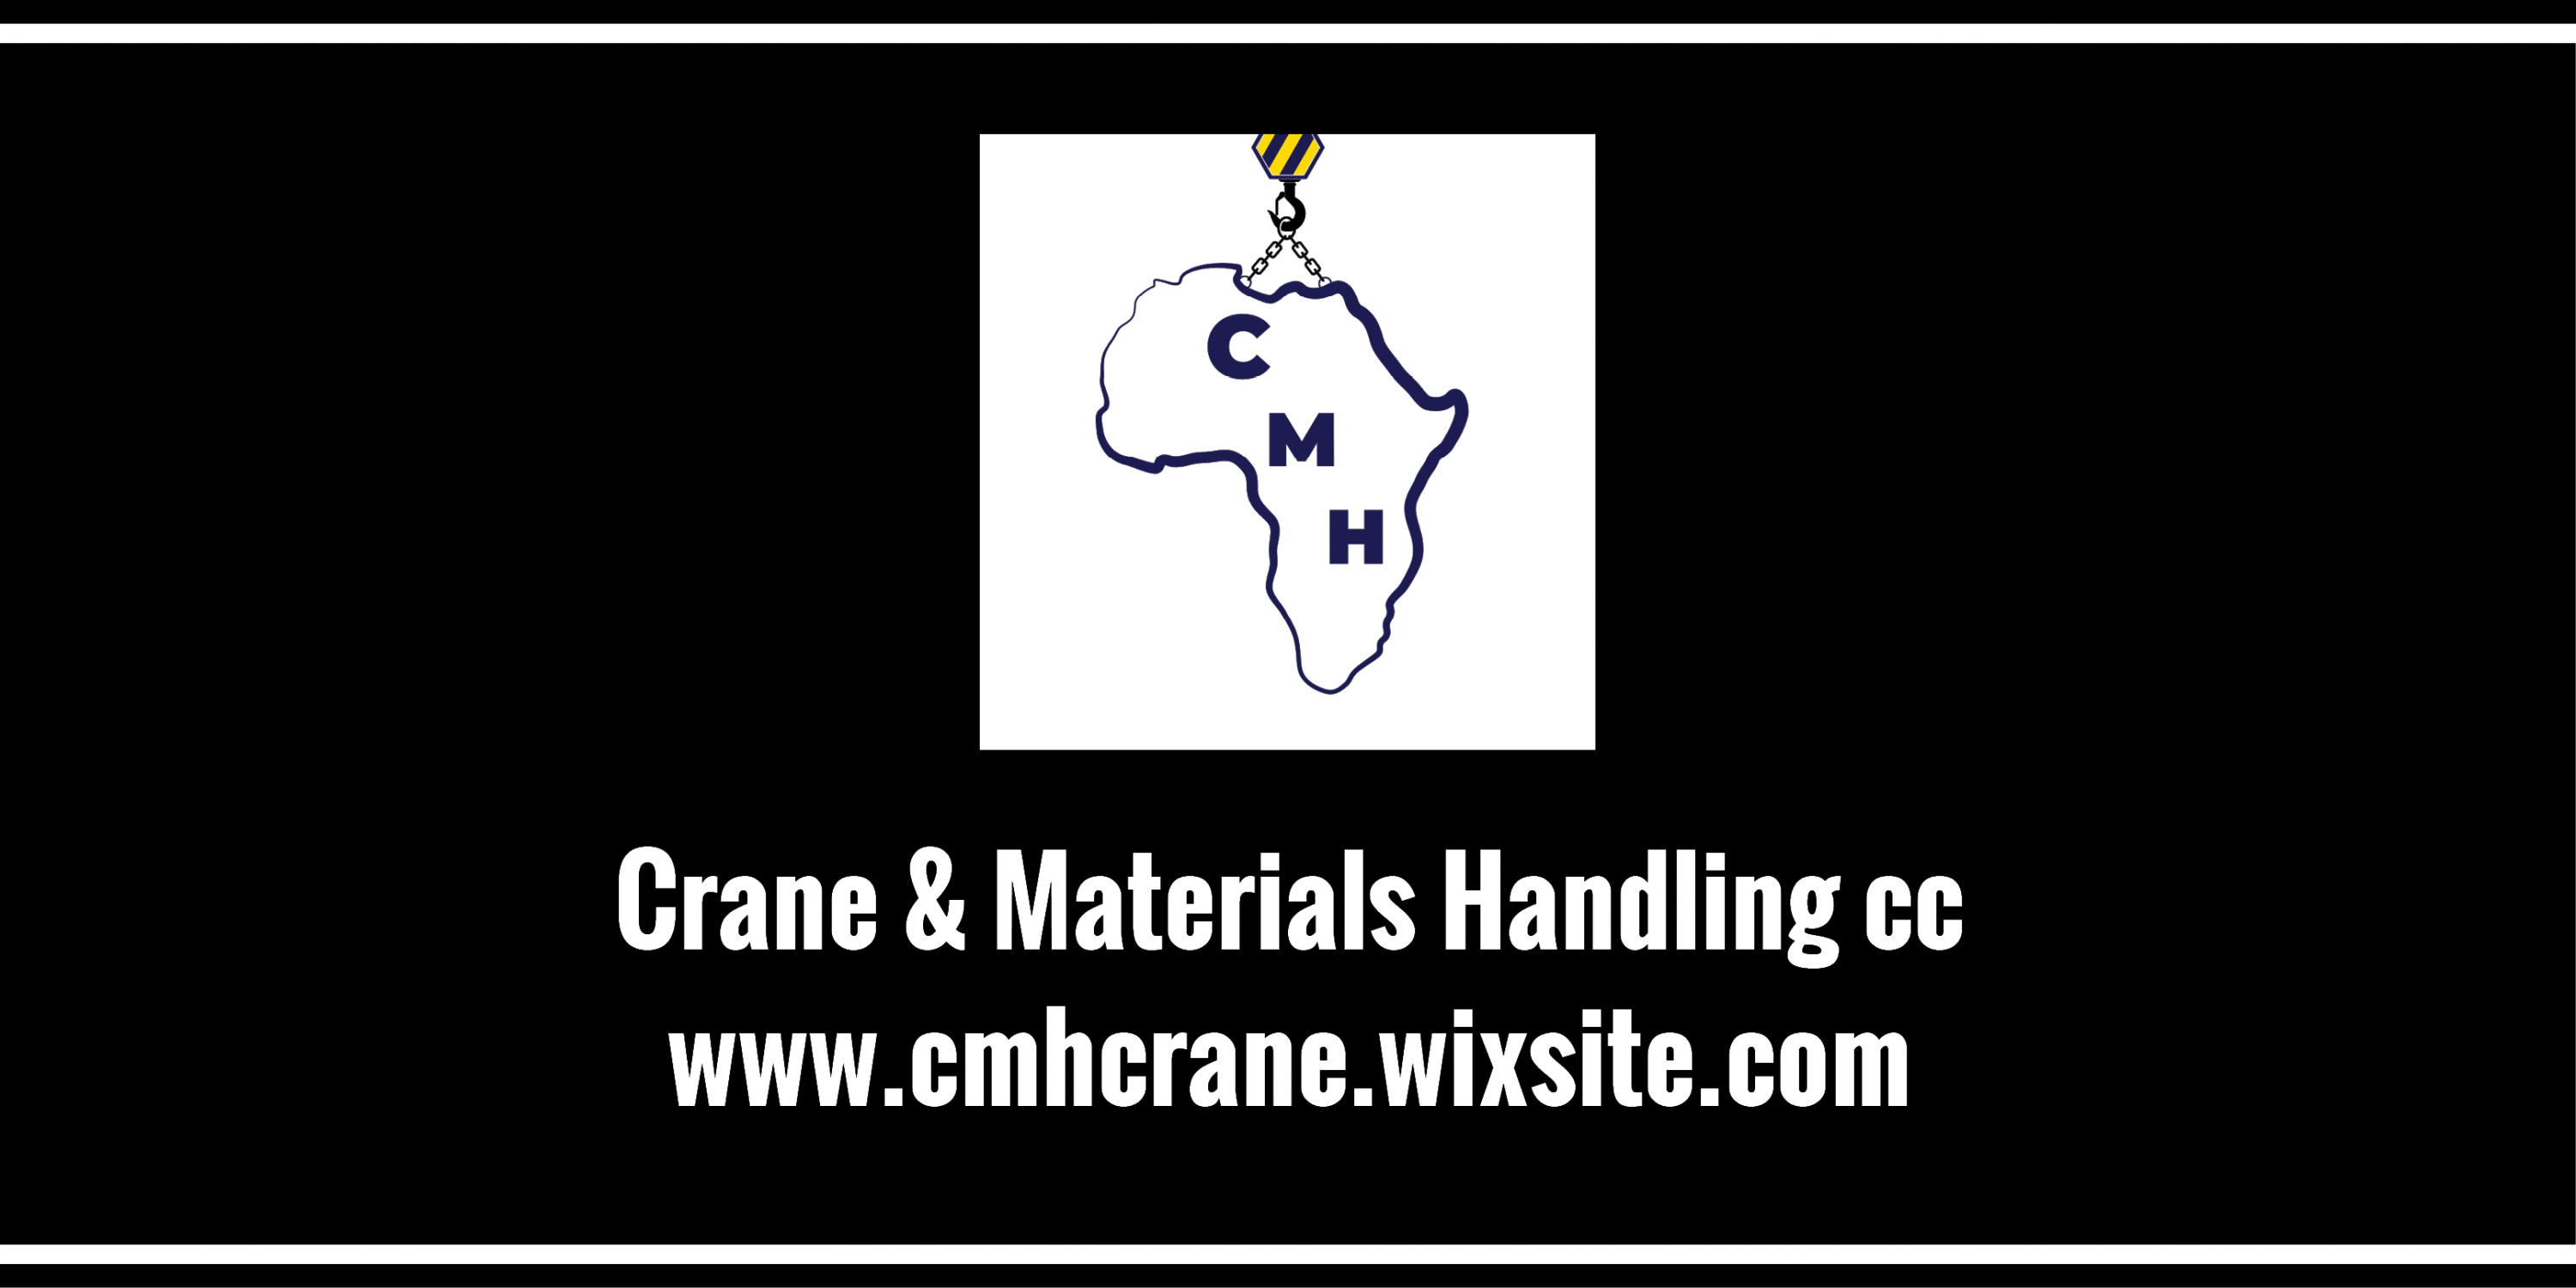 Crane & Materials Handling cc